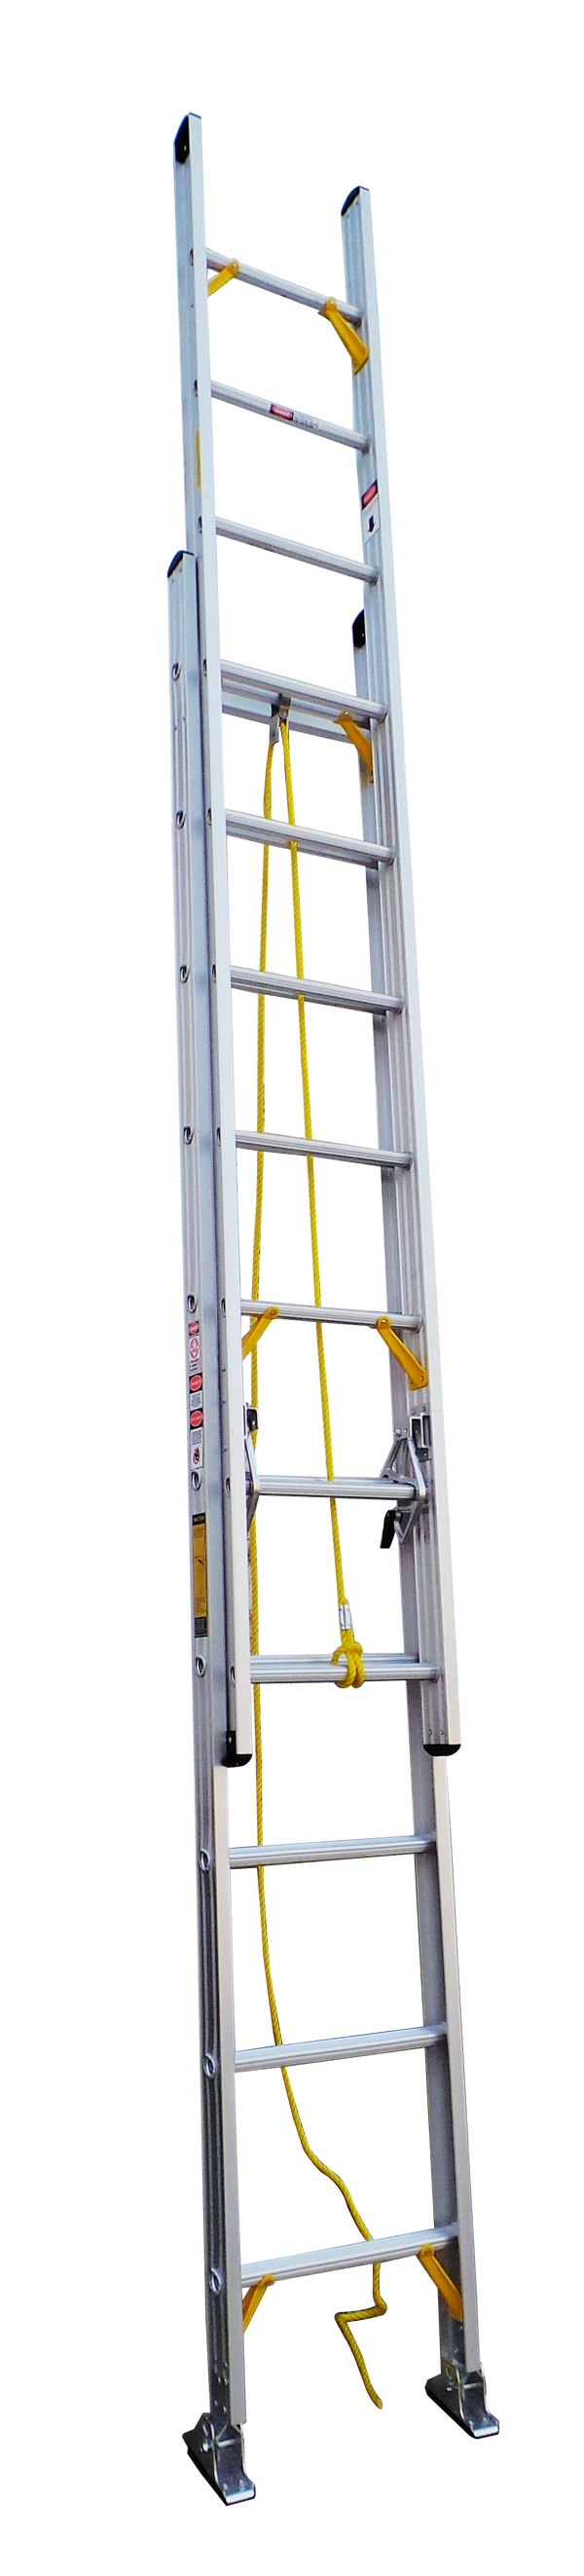 Toolsgalore Aluminum Extension Ladder